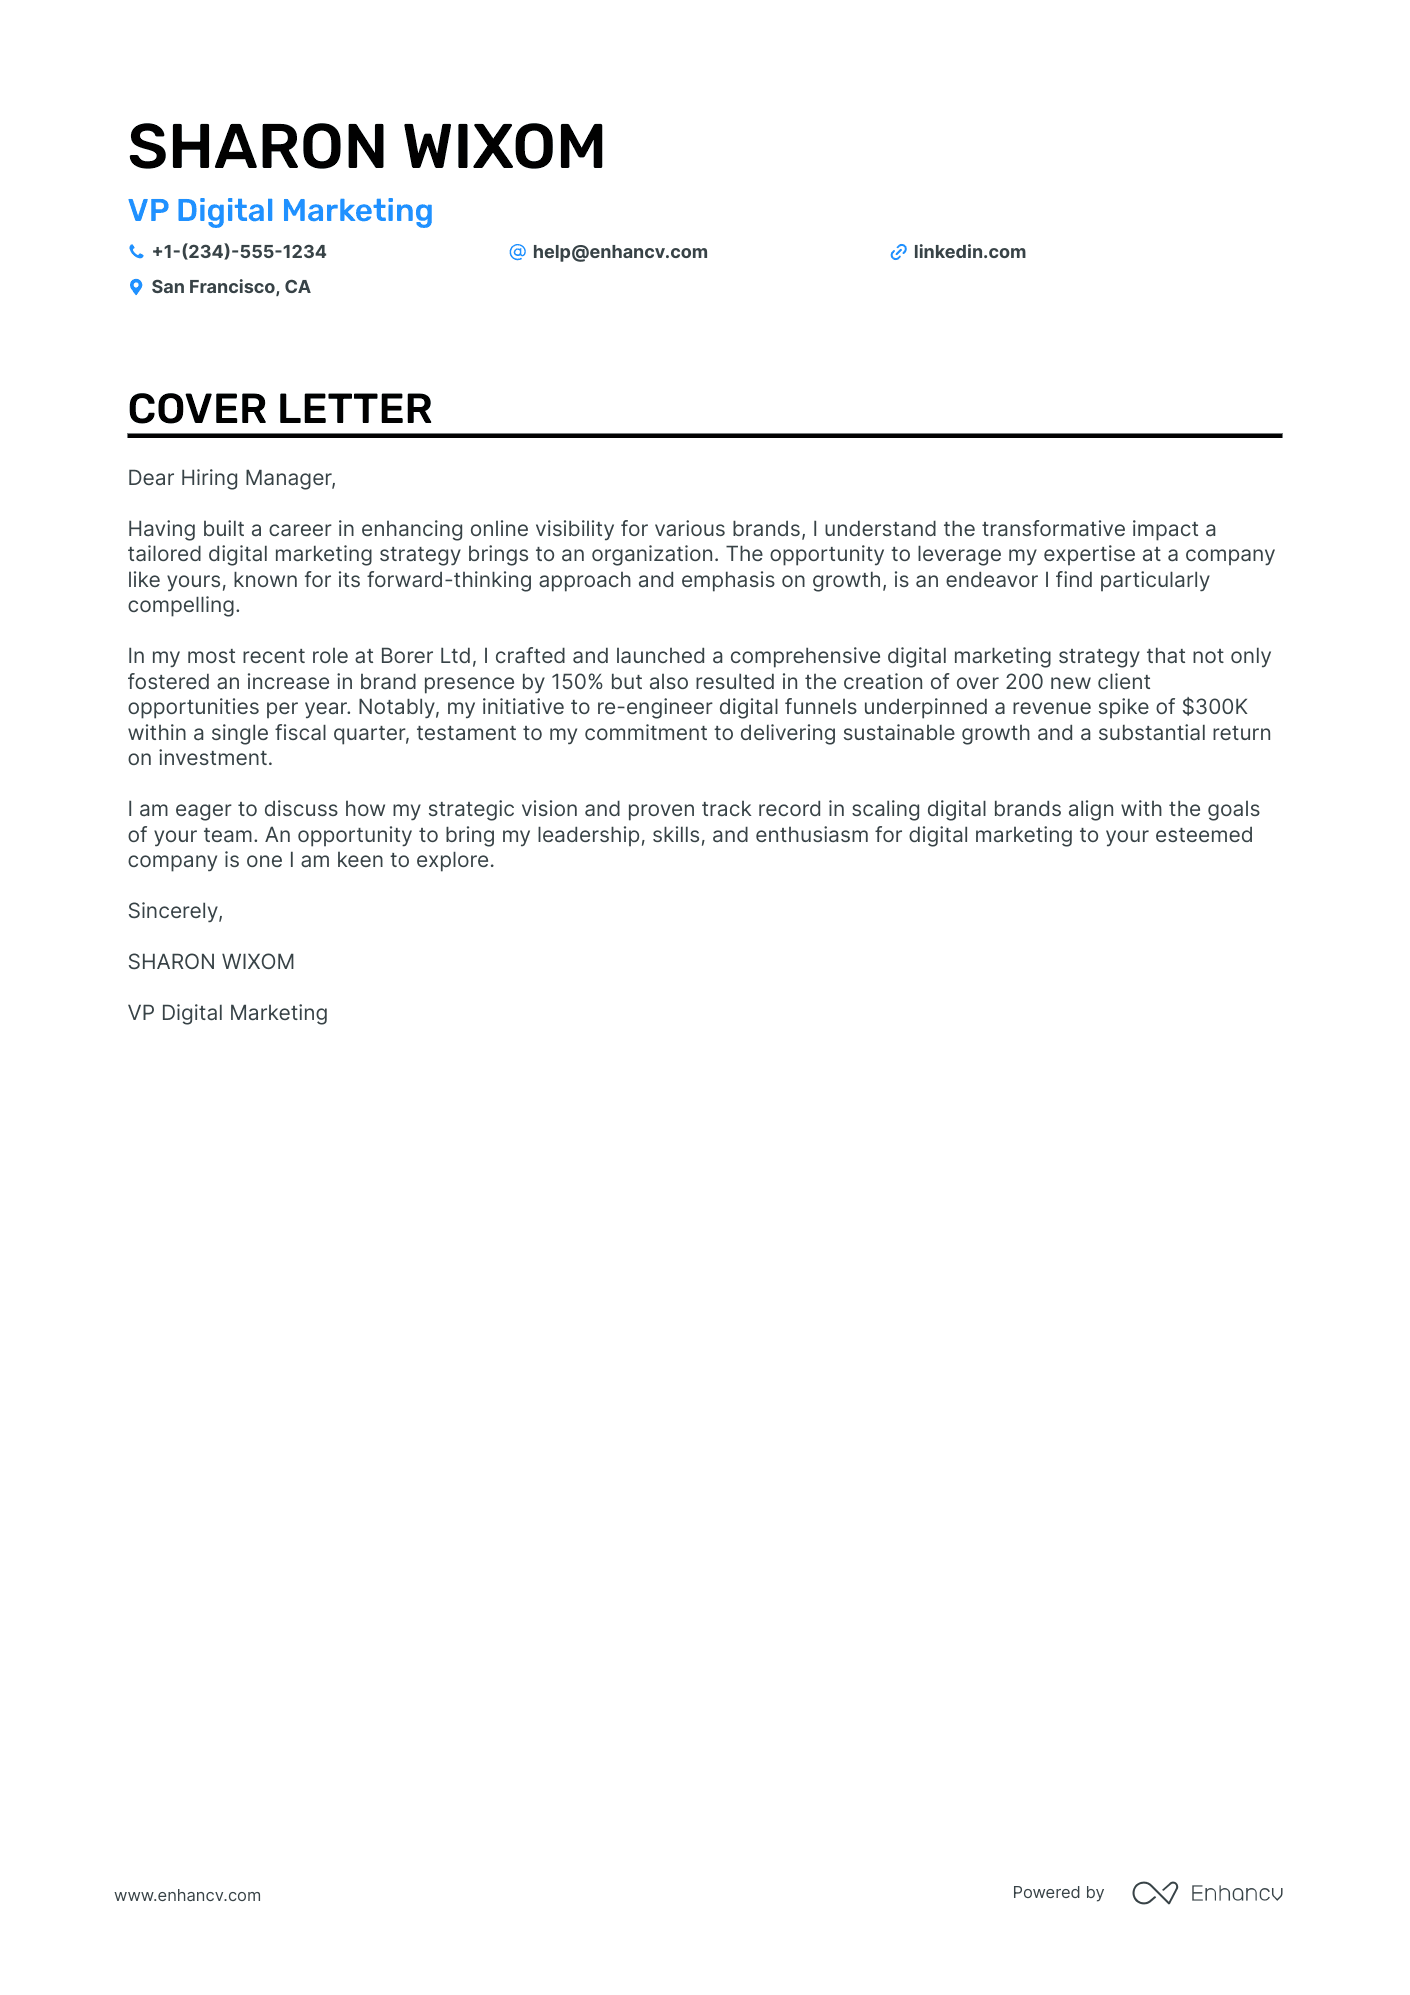 VP Digital Marketing cover letter